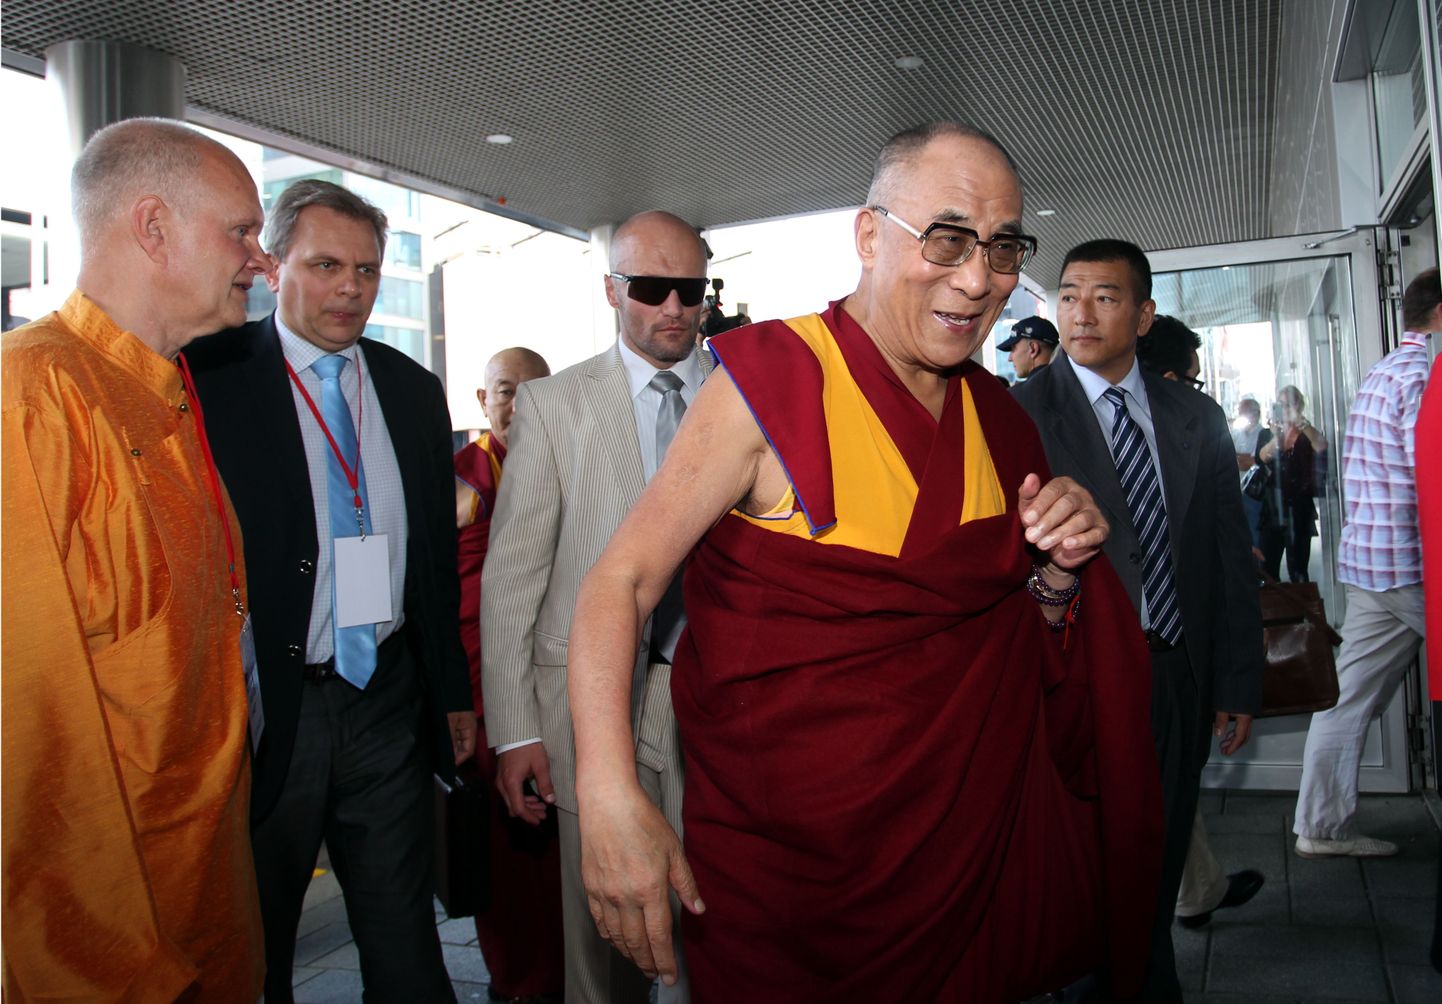 Dalai-laama saabus täna veidi enne kella 14 Radissoni hotelli, kus ta kohtub Budismi Instituudi esindajatega. Dalai-laama selja taga vasakul on Sven Grünberg, tema kõrval riigikogulane Andres Herkel.